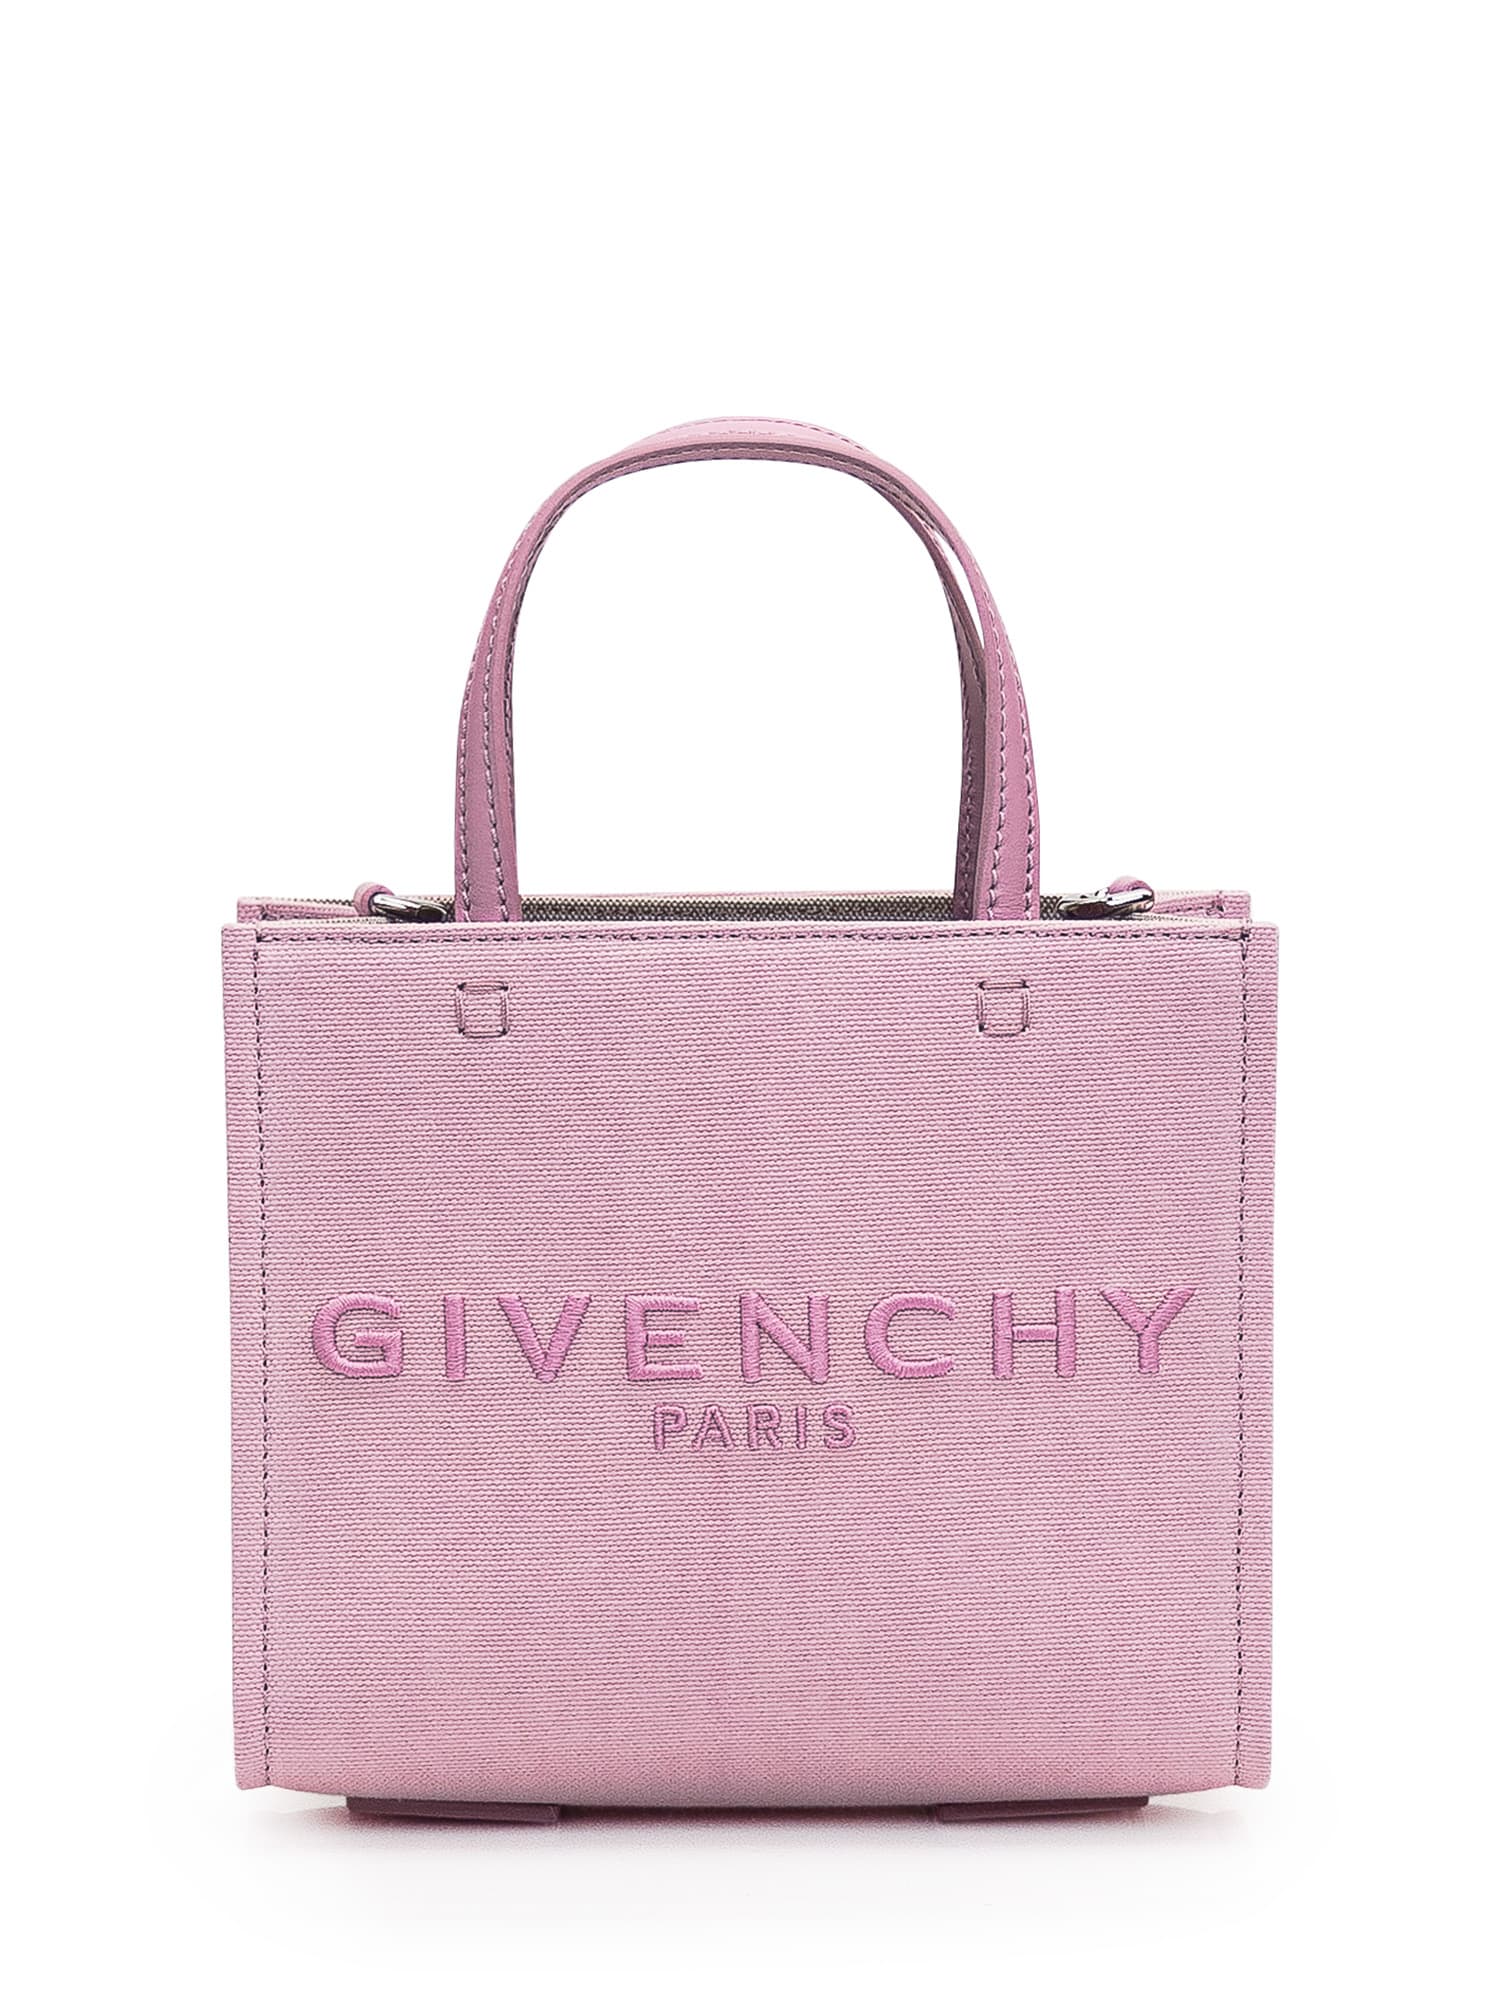 Givenchy G-tote Mini Bag